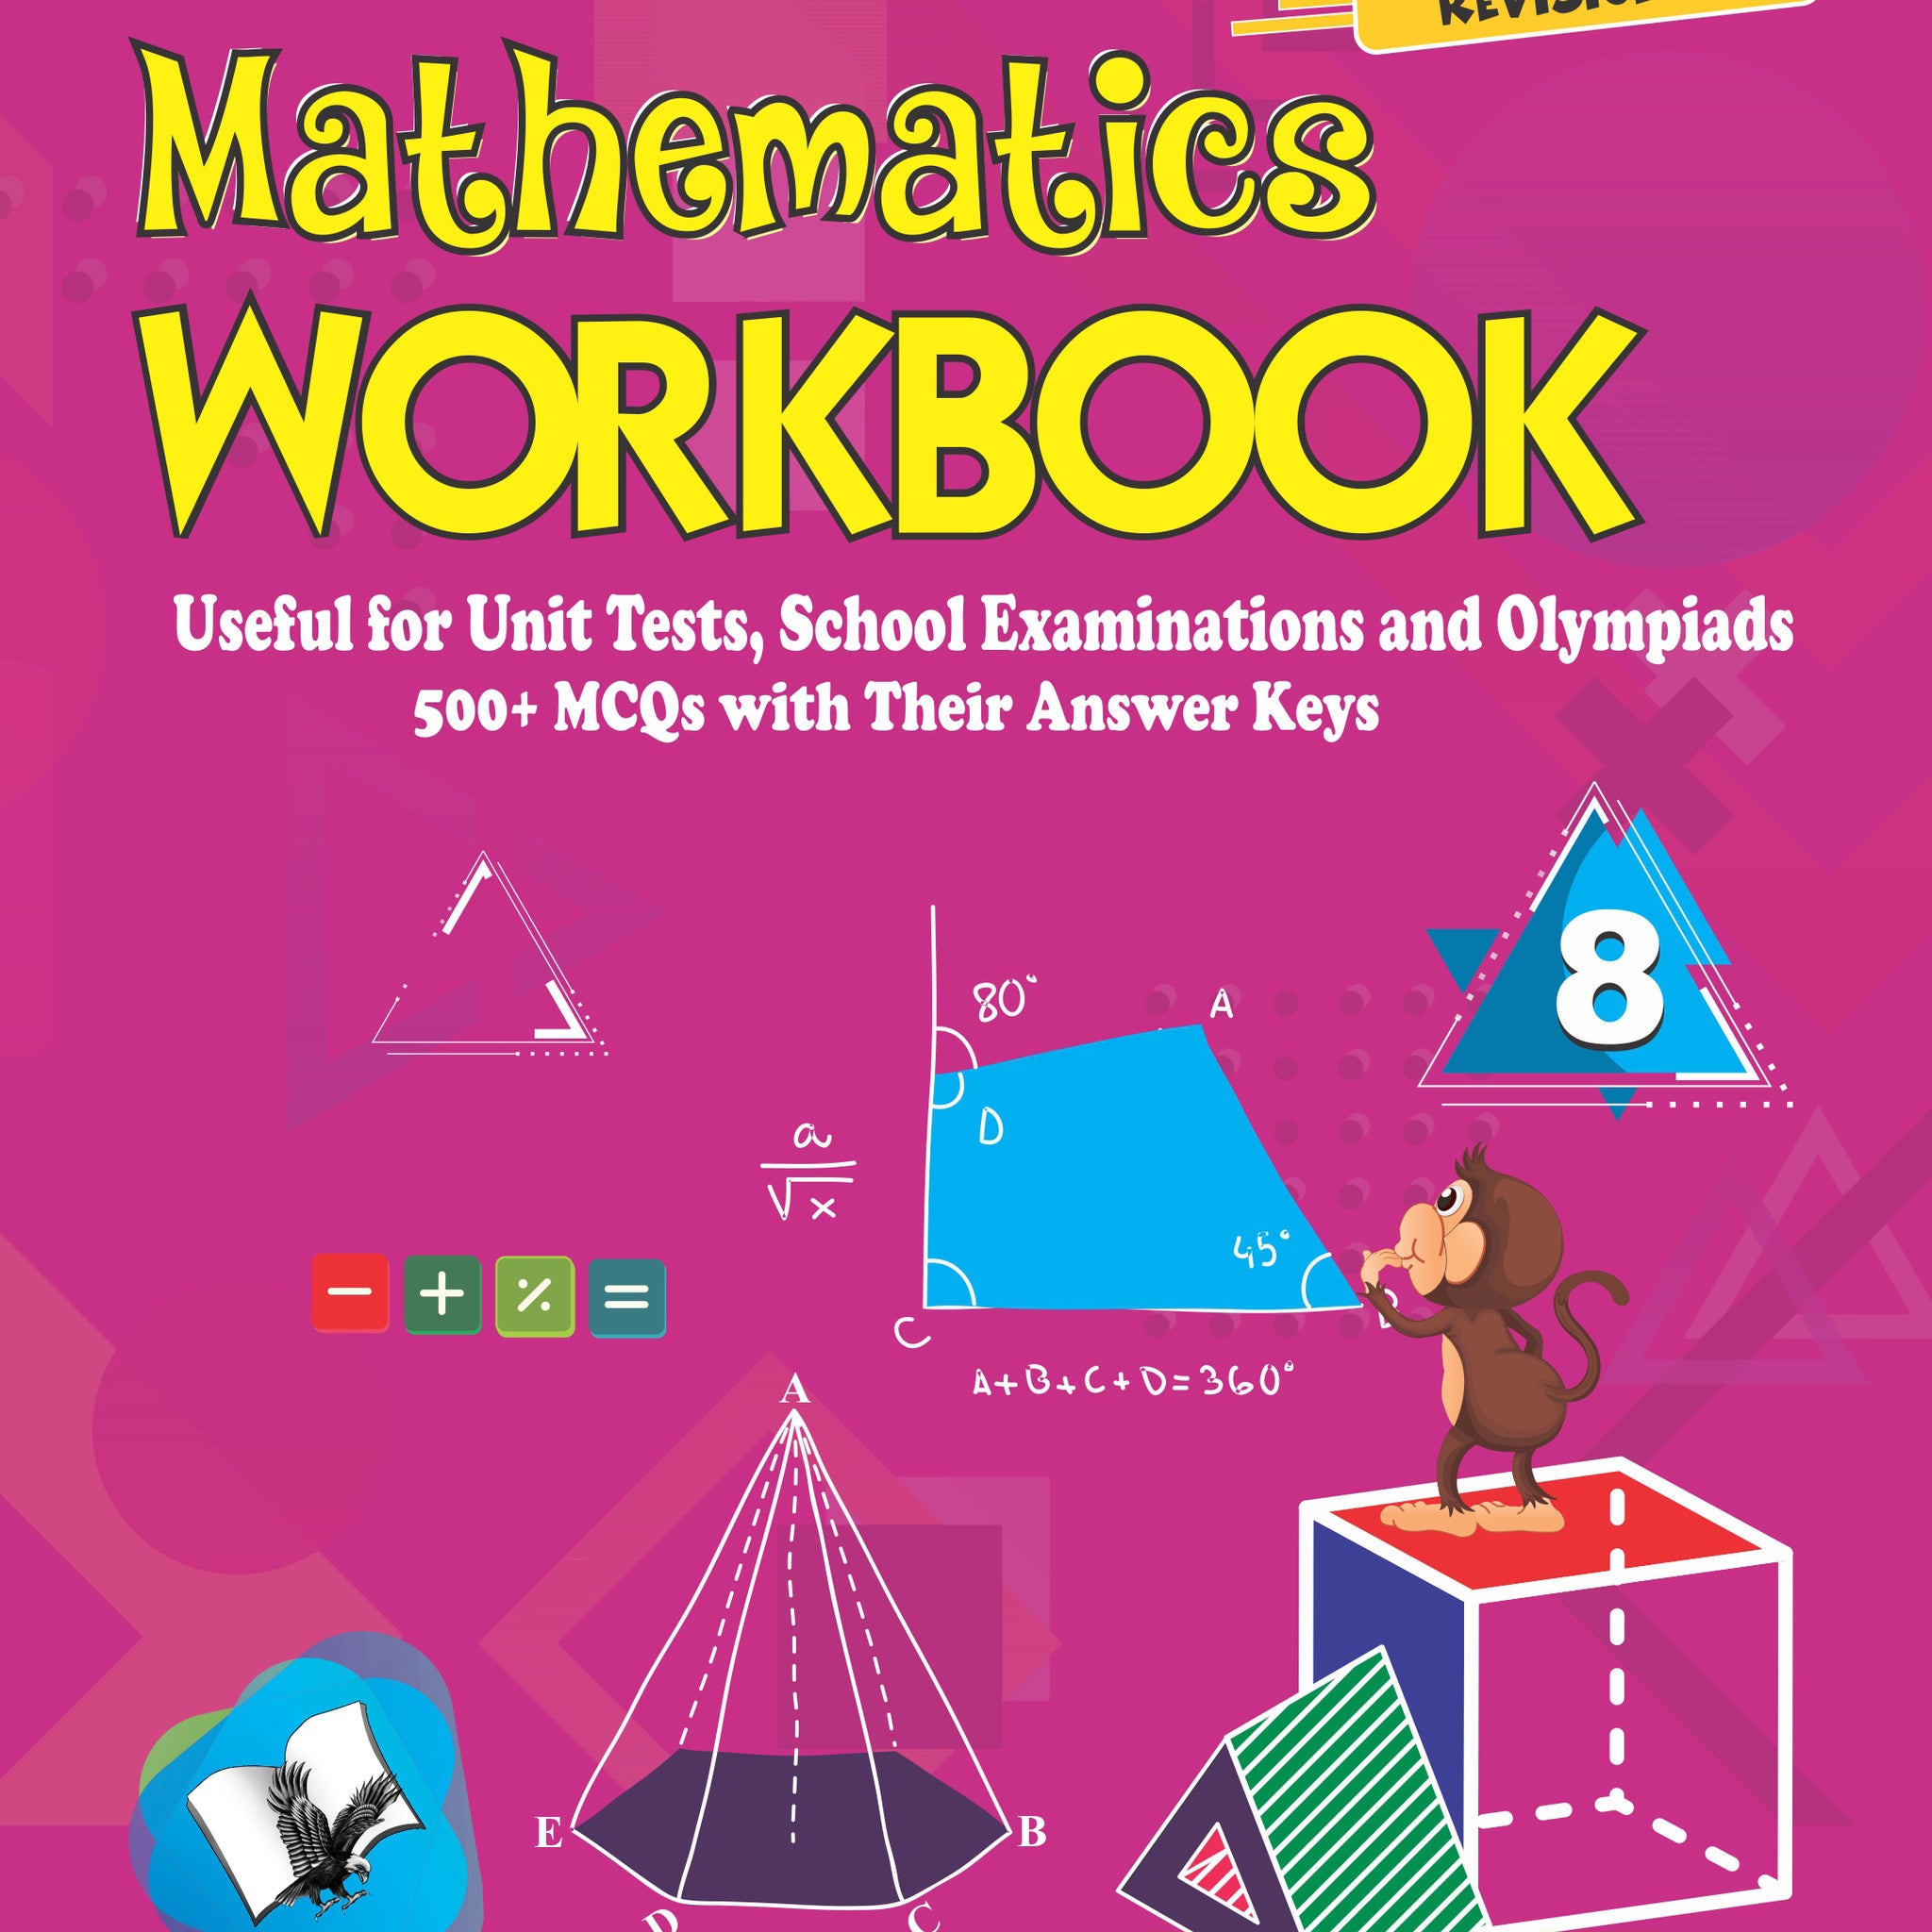 Mathematics Workbook Class 8